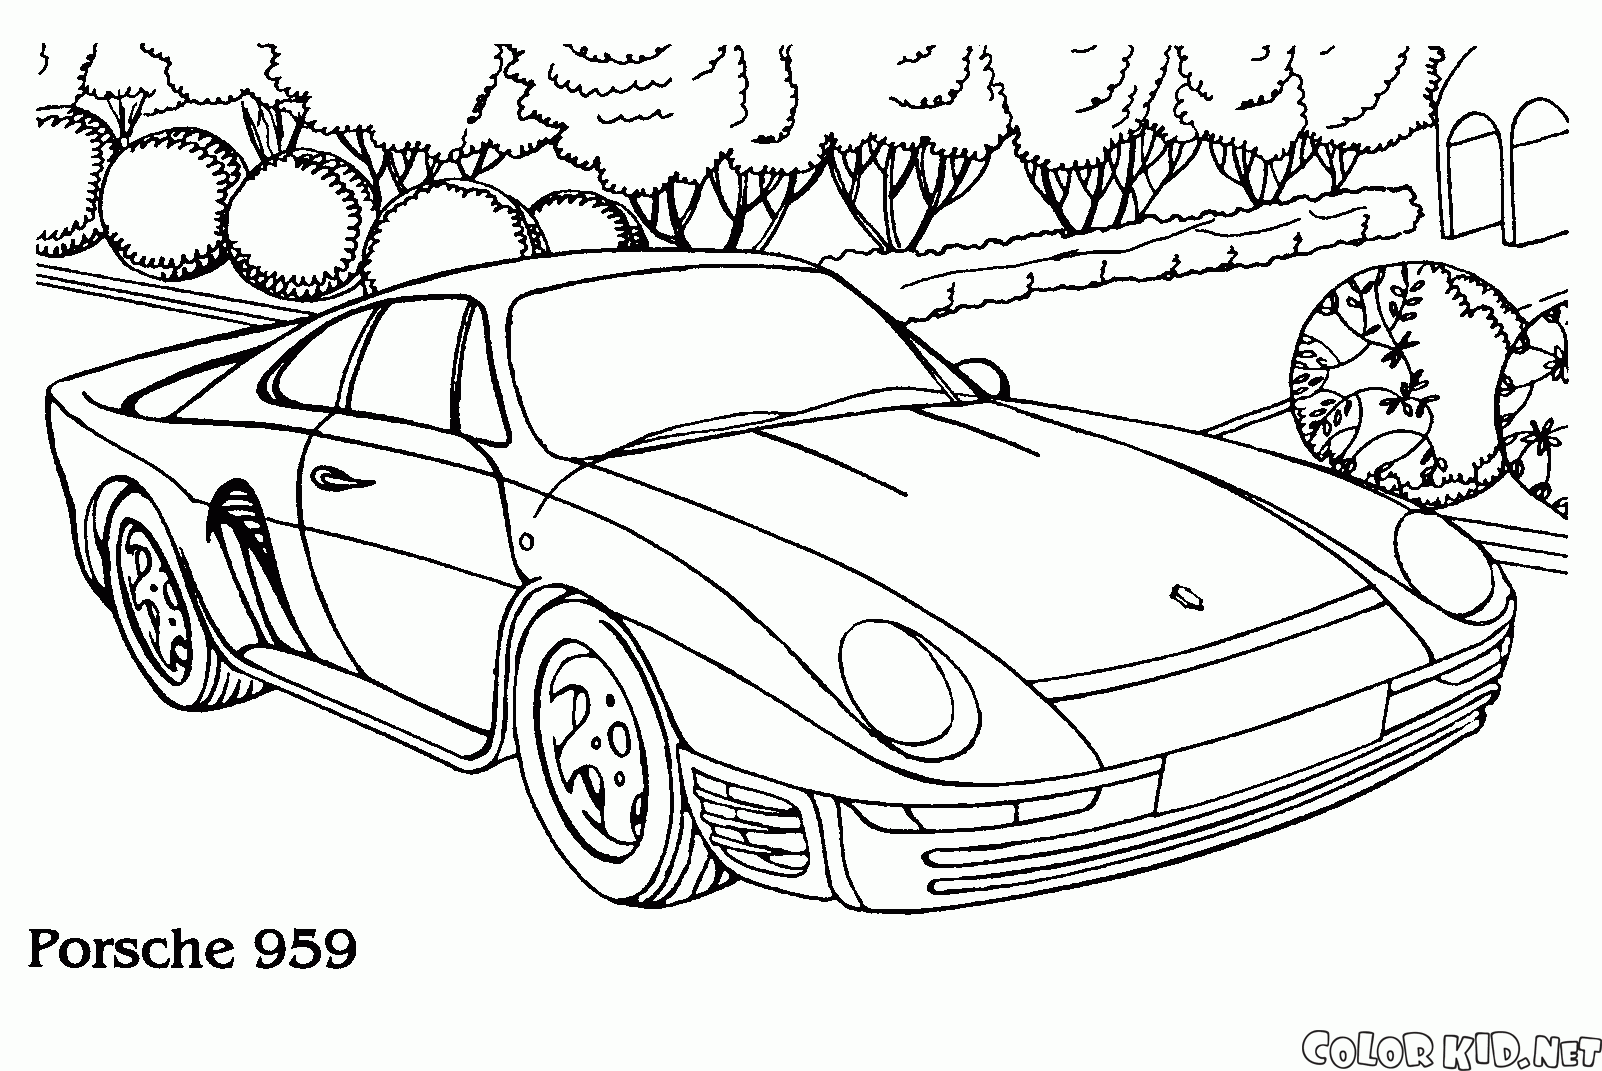 Coloring page - Porsche 959